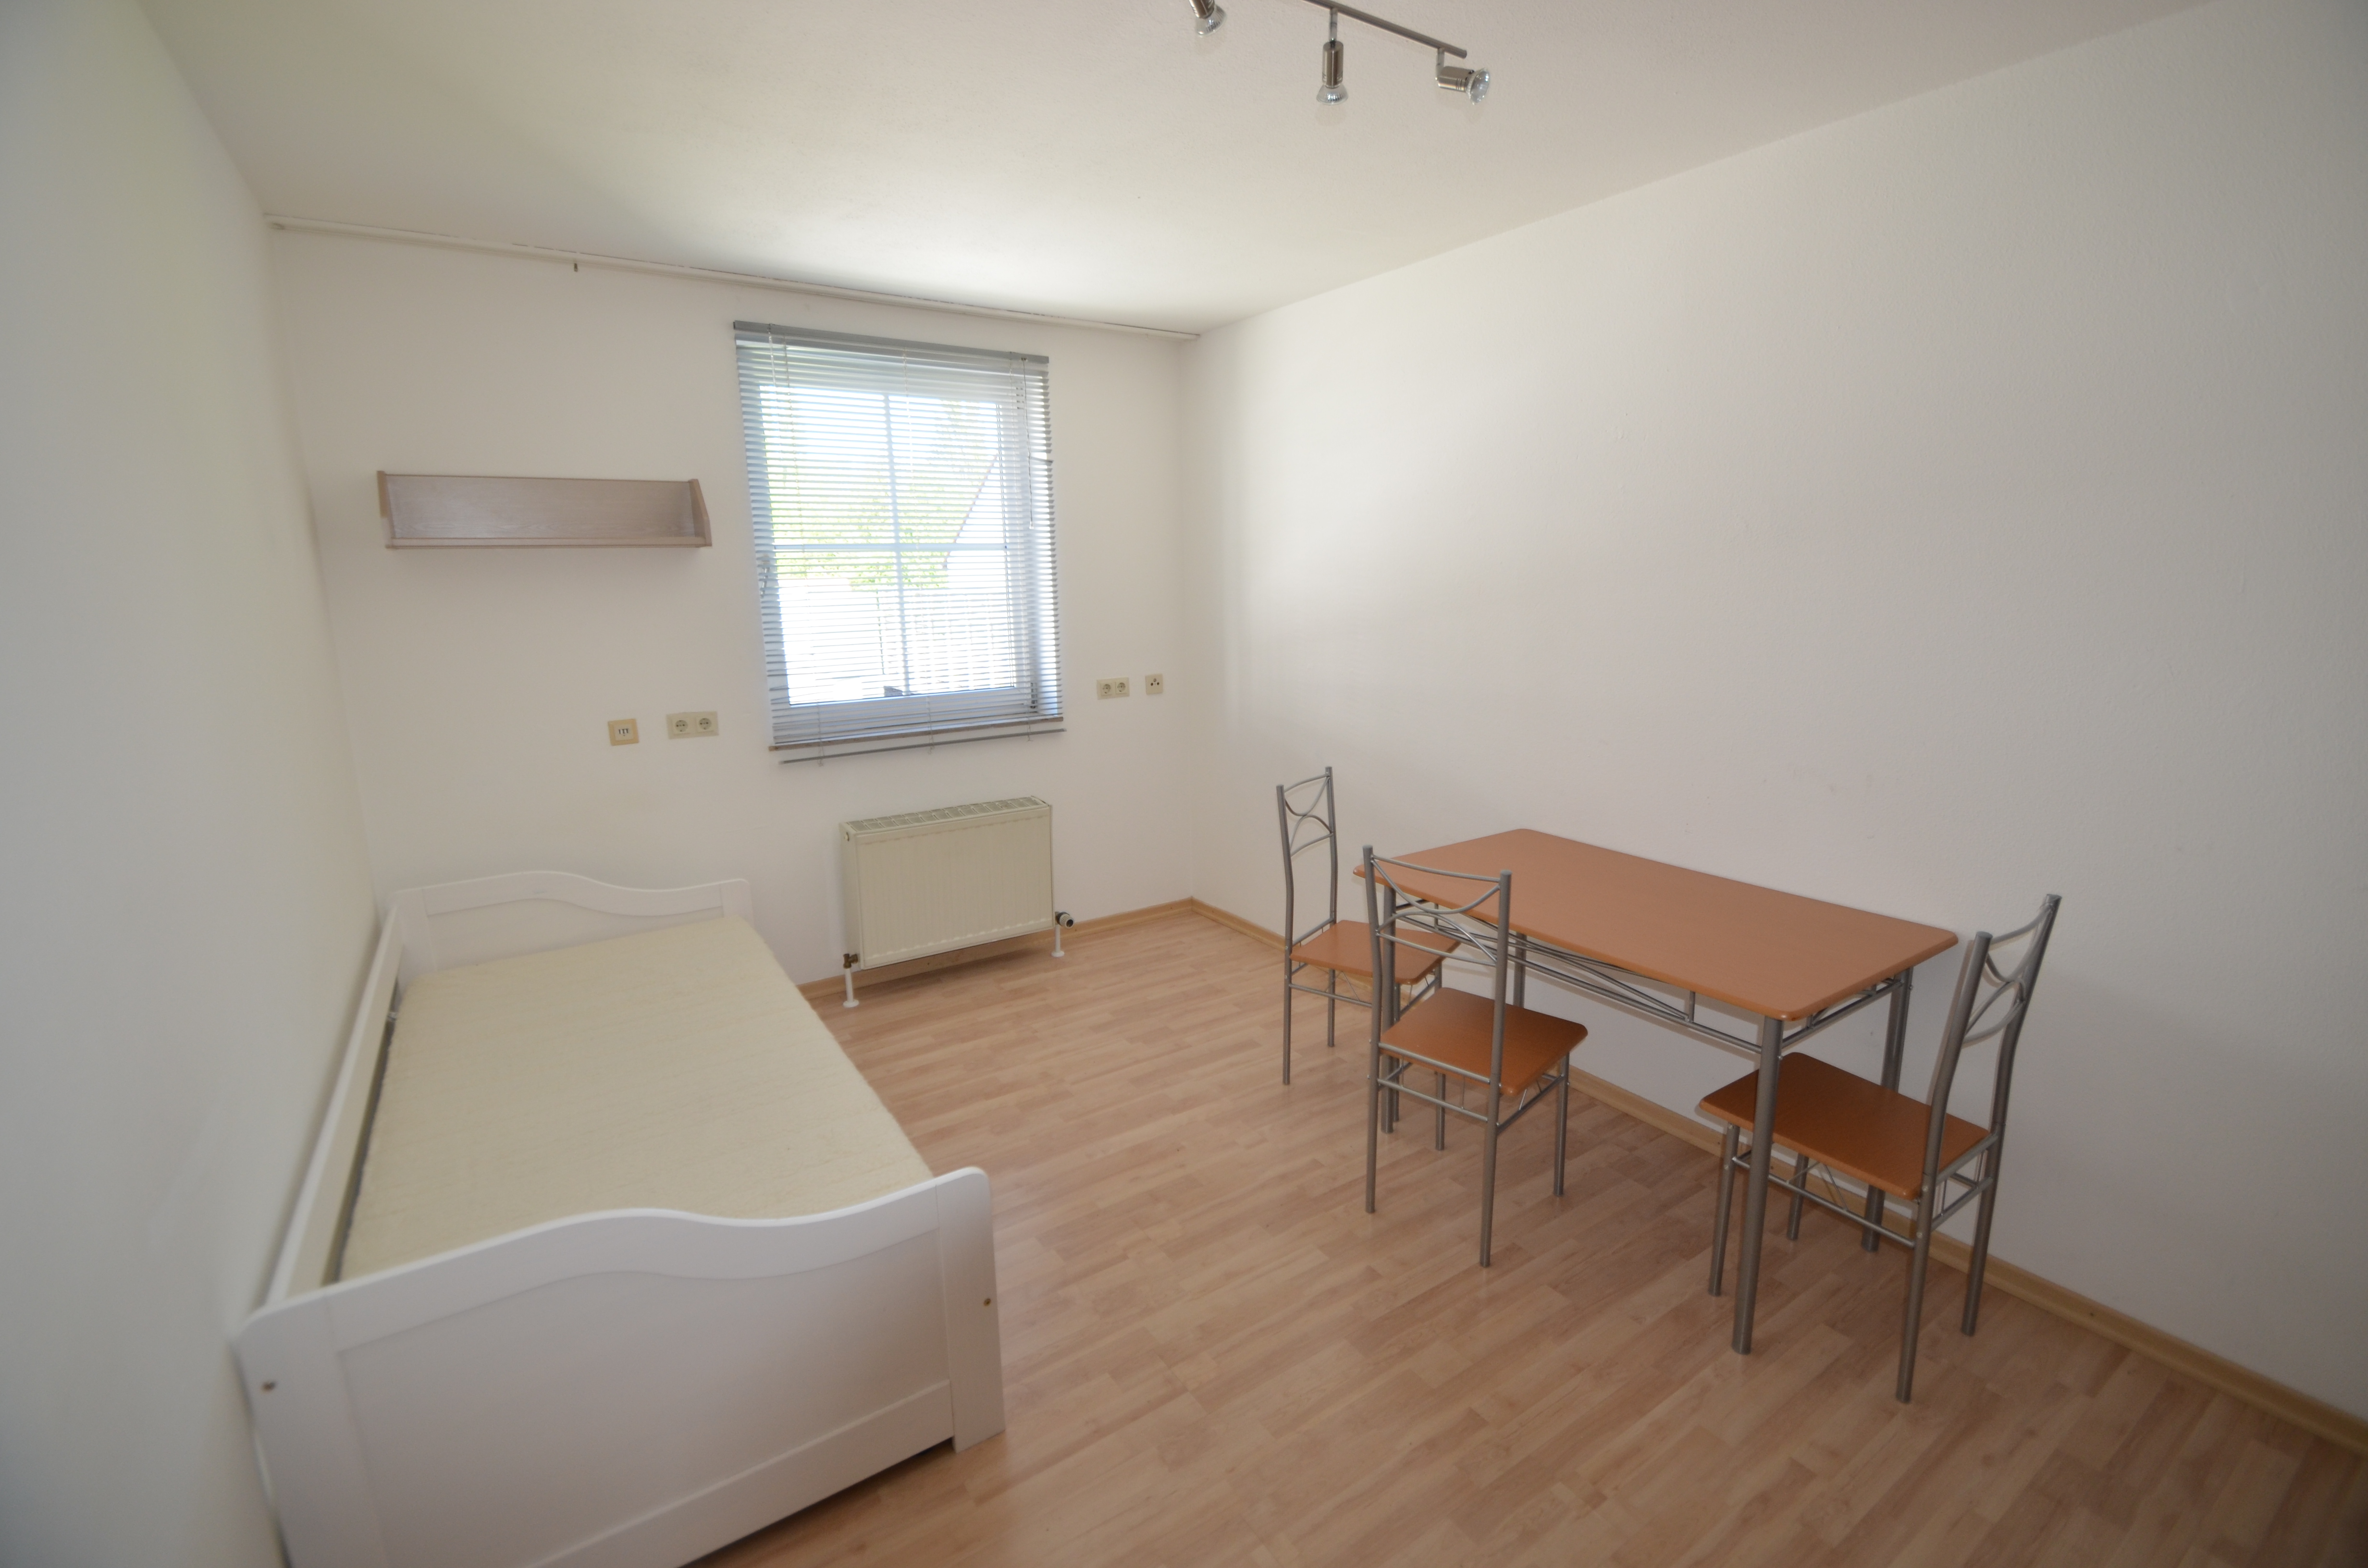 Gemütliches 1-Zimmer-Apartment in zentraler Lage von Bayreuth bestens geeignet für Studenten oder Azubis